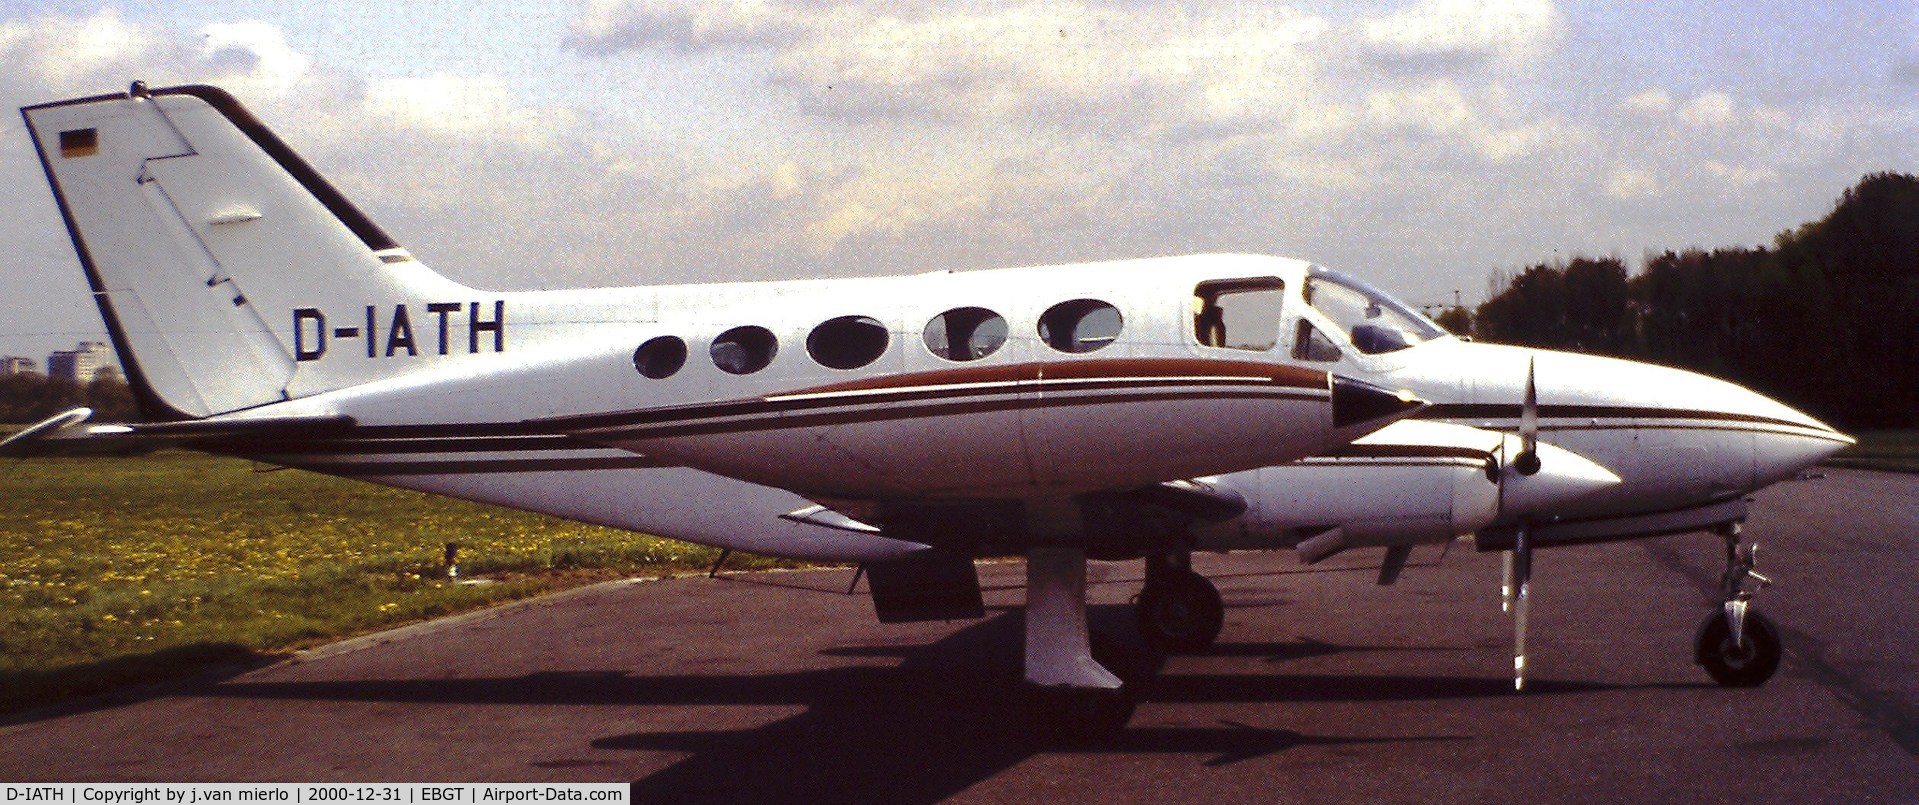 D-IATH, 1977 Cessna 414 Chancellor C/N 414-0914, Ghent, Belgium '80s